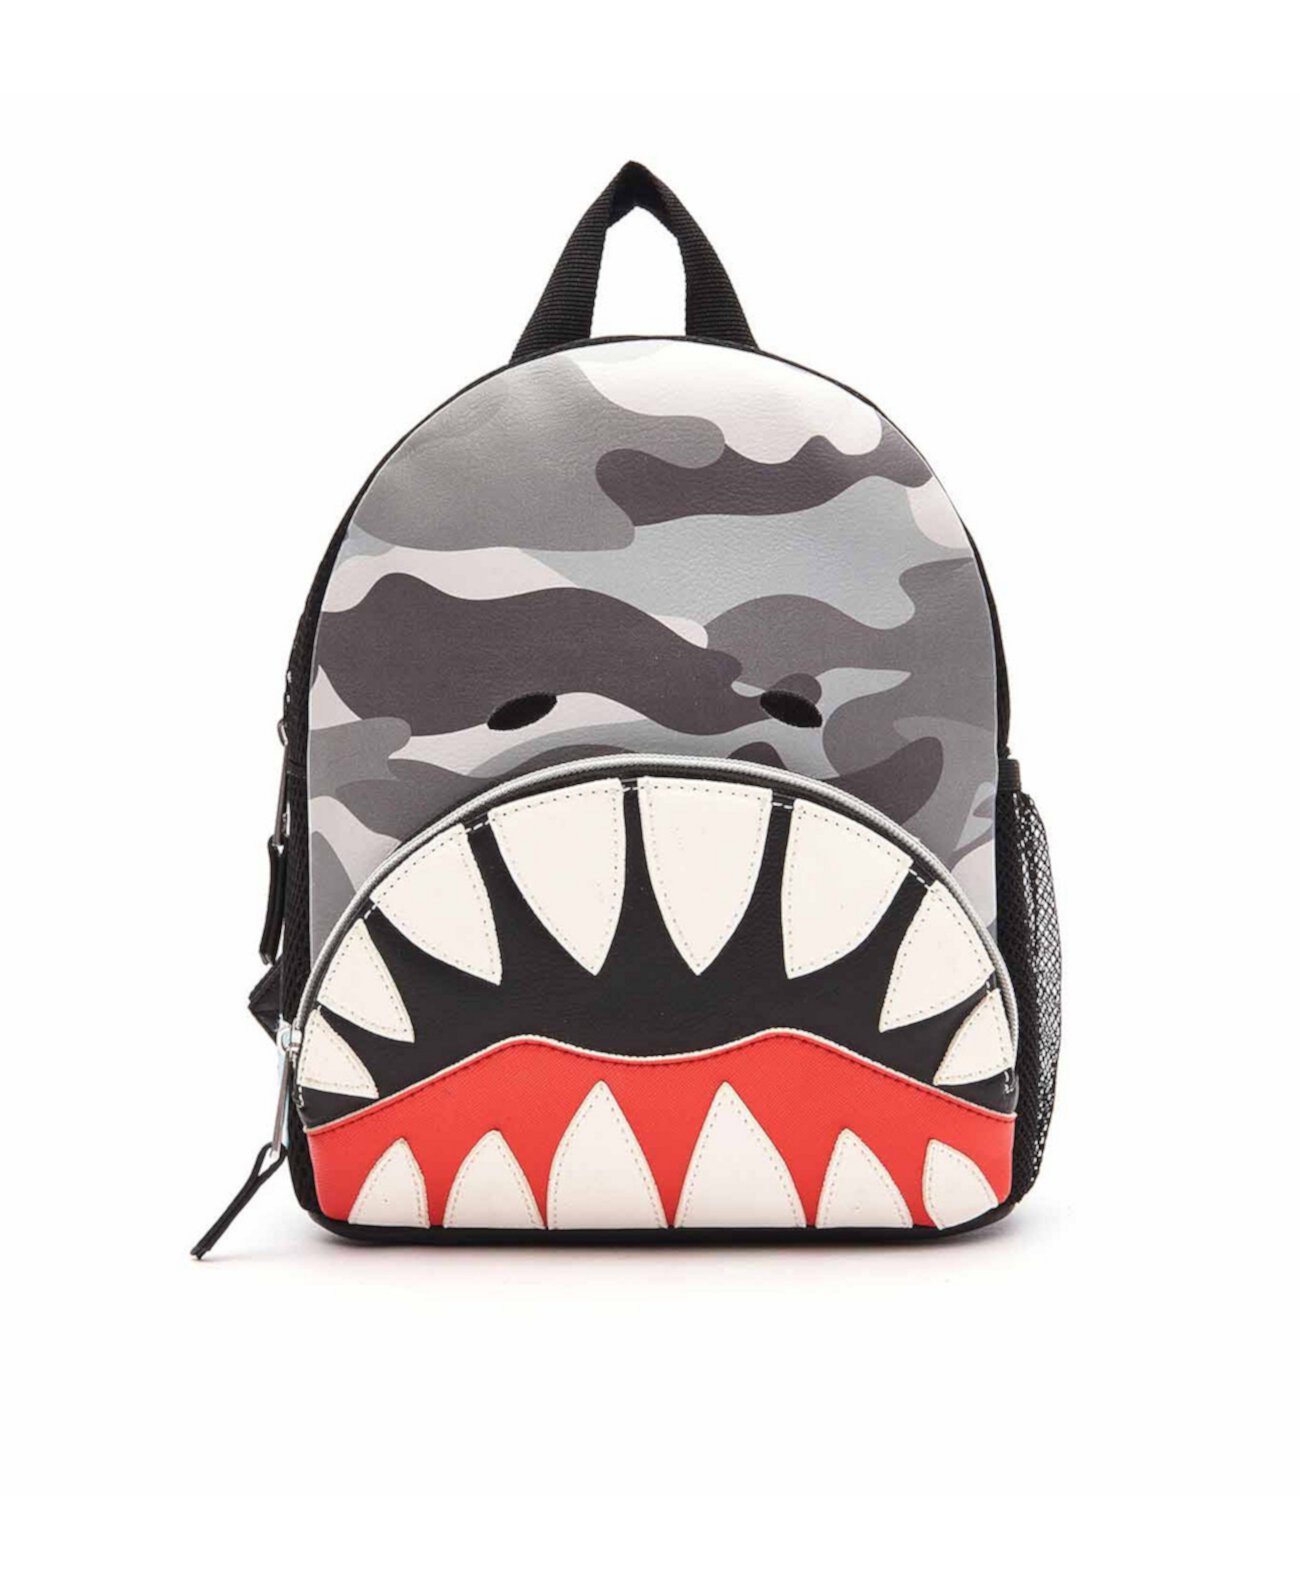 Миниатюрный рюкзак с камуфляжным принтом Shark OMG! Accessories